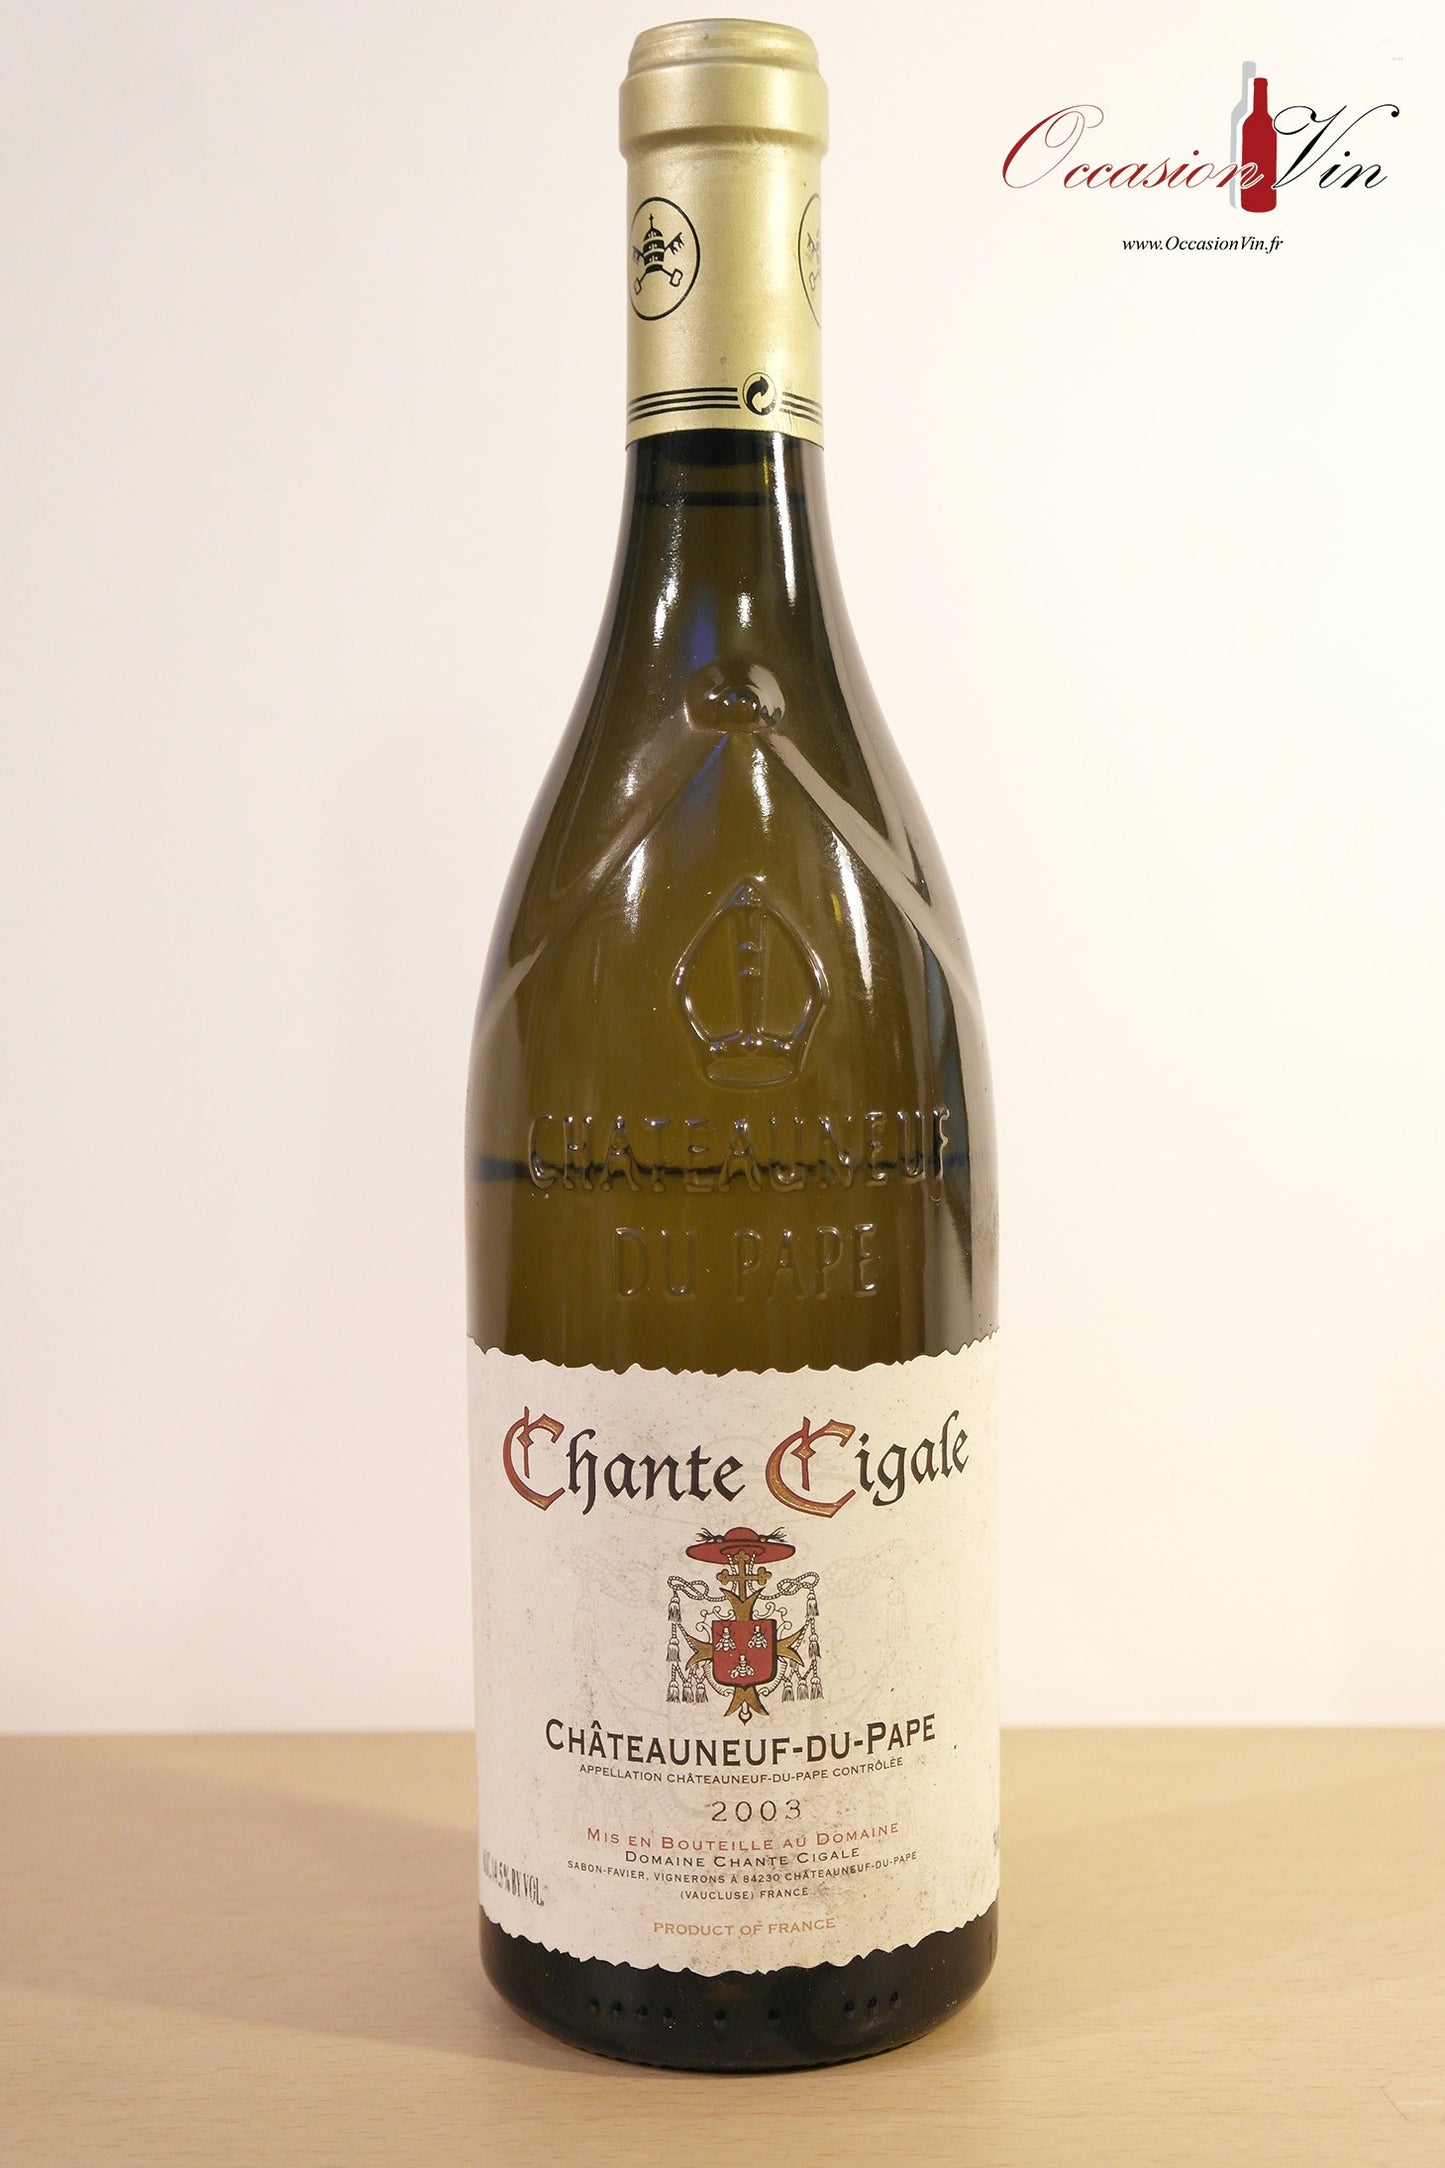 Chante Cigale Châteauneuf-du-Pape Vin 2003